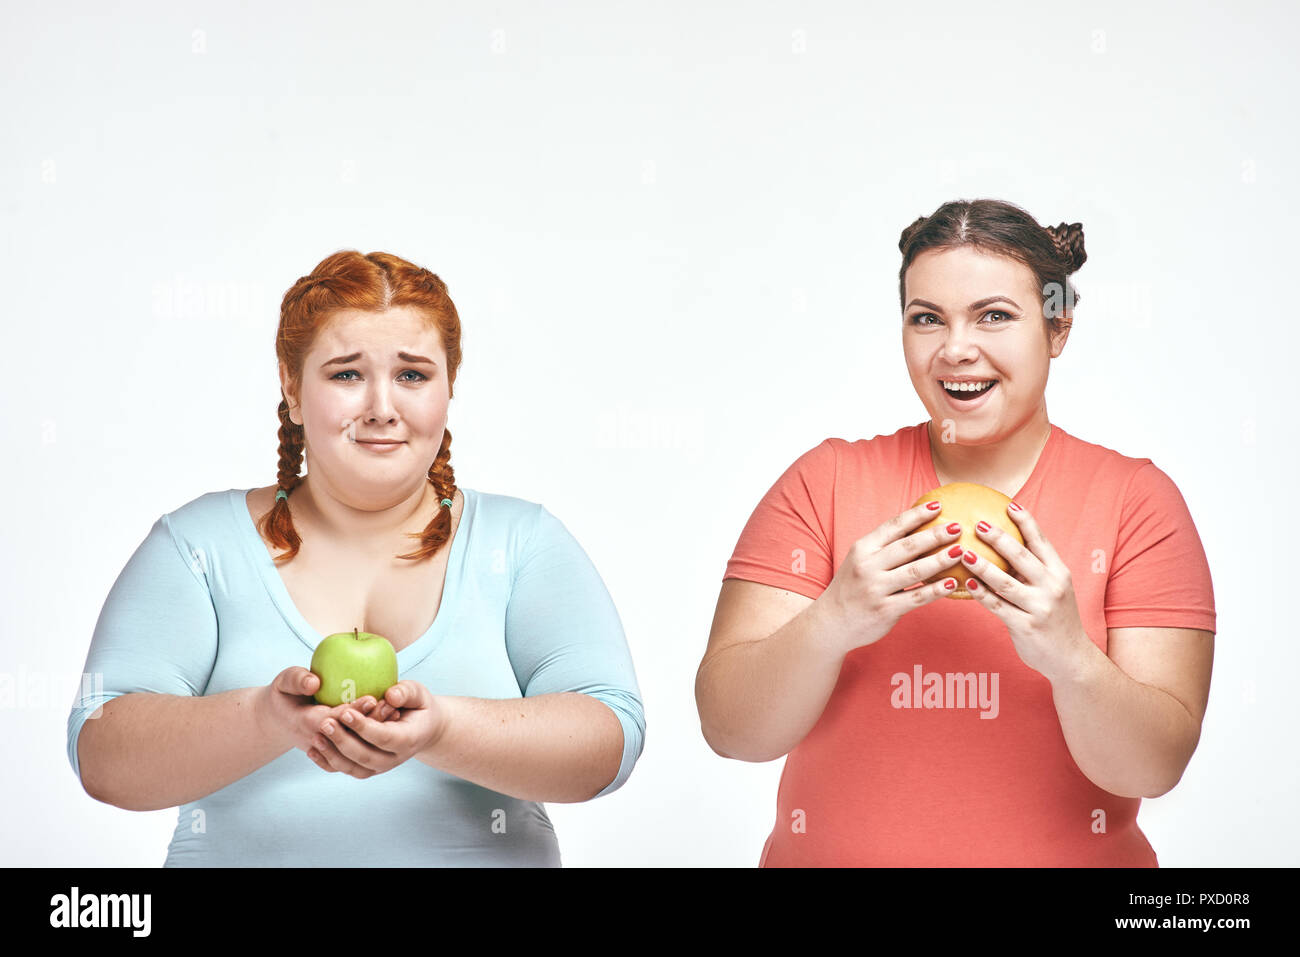 Divertente immagine di divertenti chubby donne su sfondo bianco. Una donna tenendo un sandwich, l'altra azienda un apple. Foto Stock